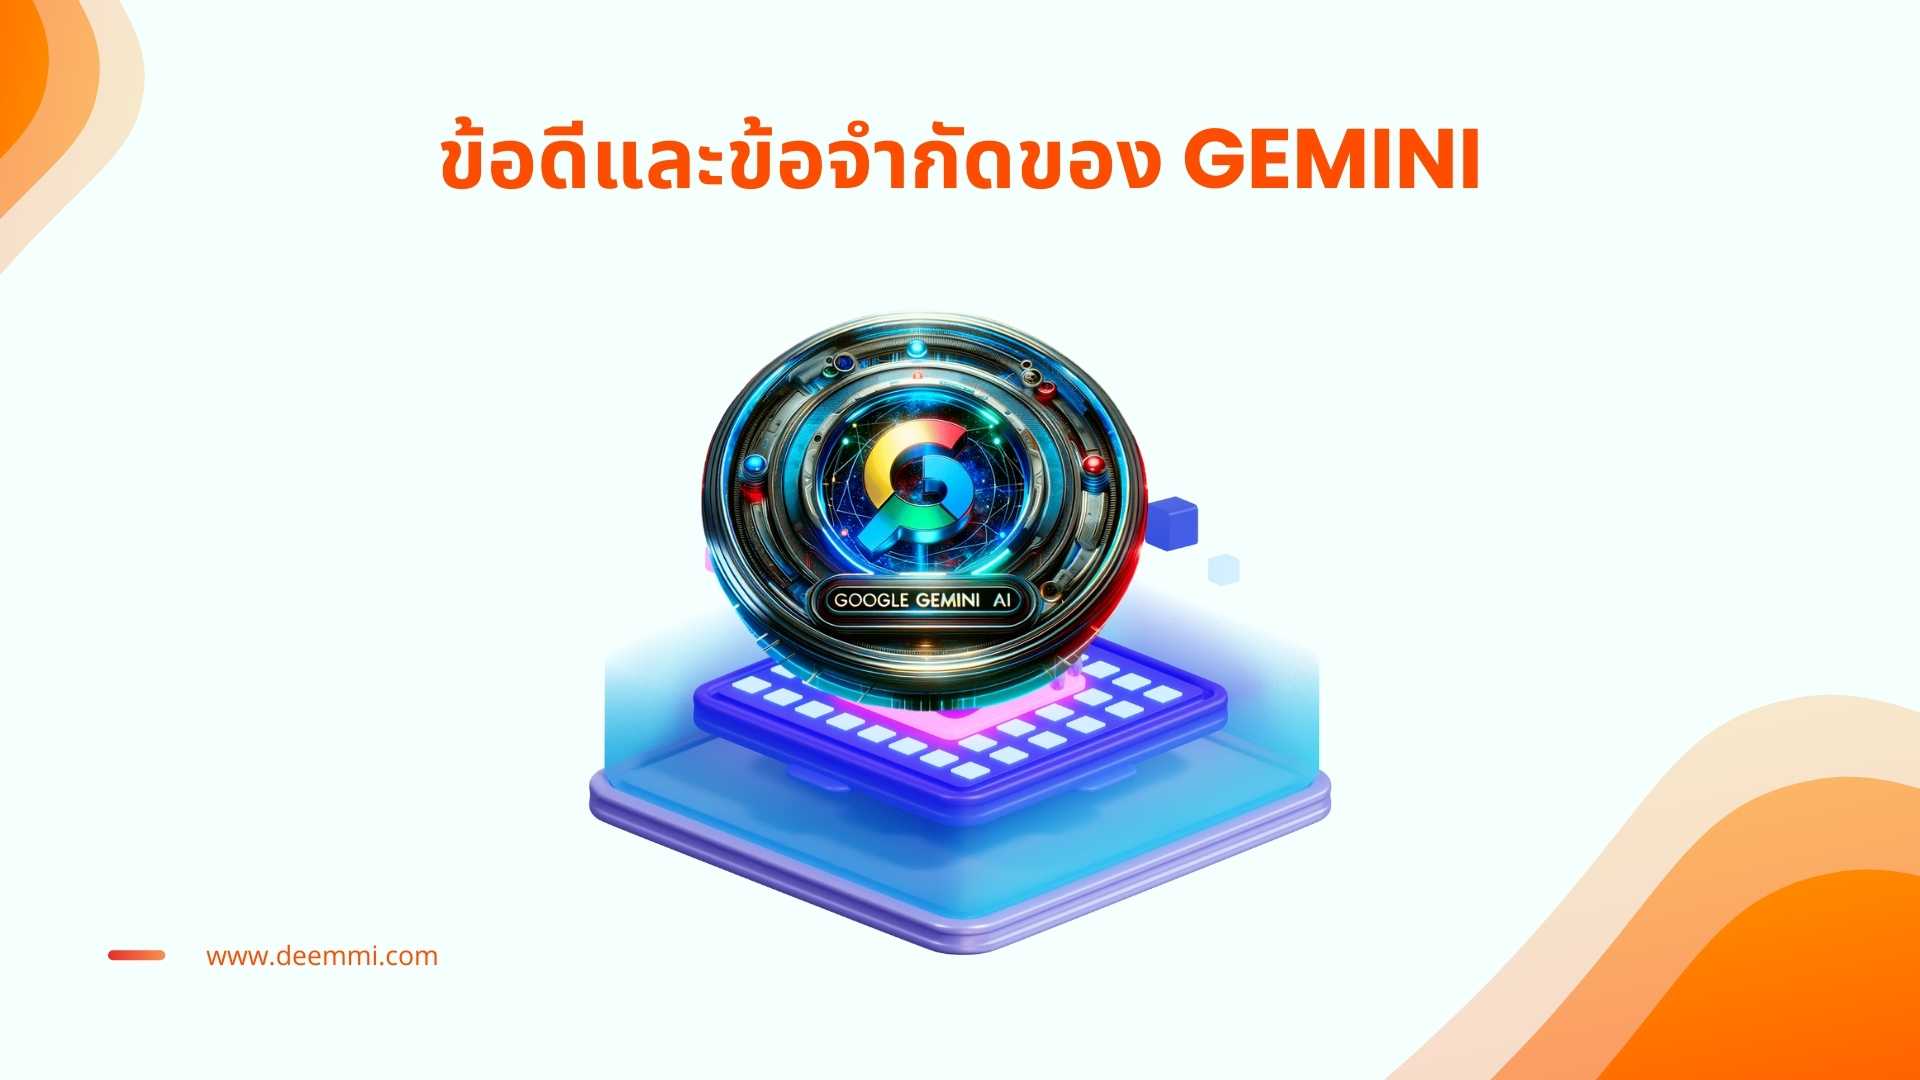 Gemini AI ผู้ช่วยวิเคราะห์ข้อมูลและเข้าใจลูกค้าได้อย่างลึกซึ้ง_Gemini-Generative-AI_benifit_limitation